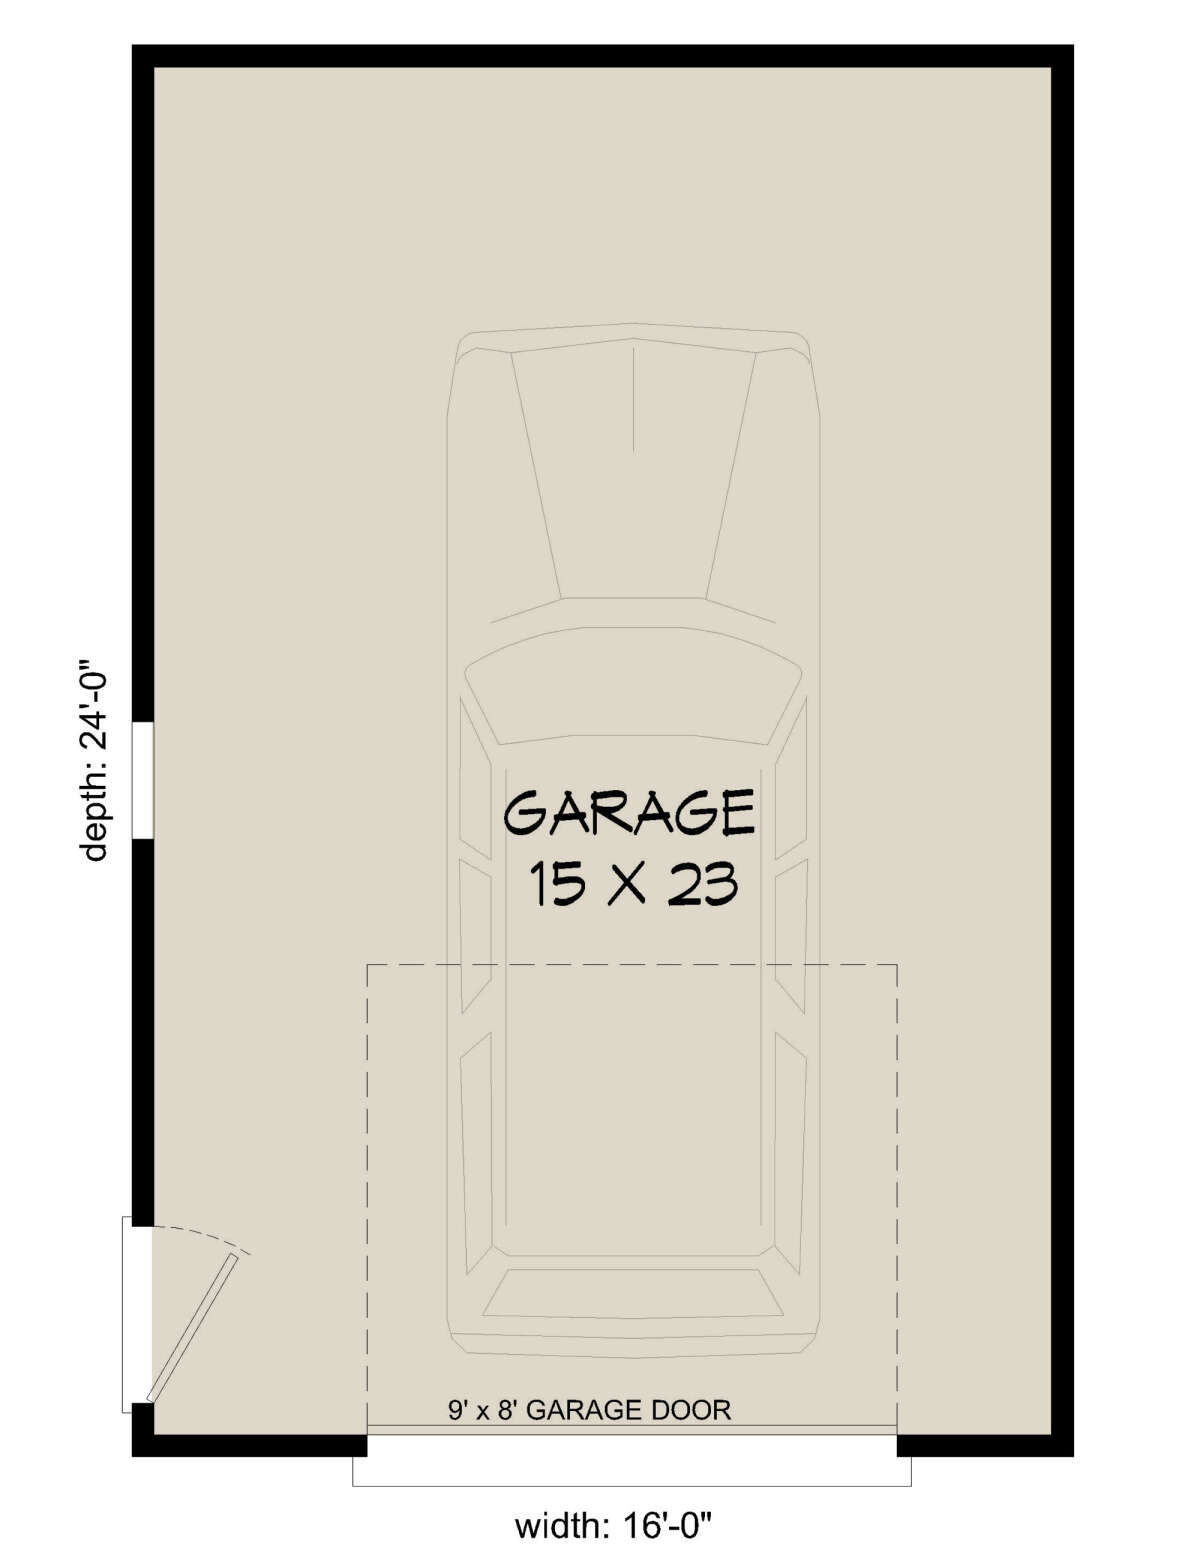 Garage Floor for House Plan #940-00330